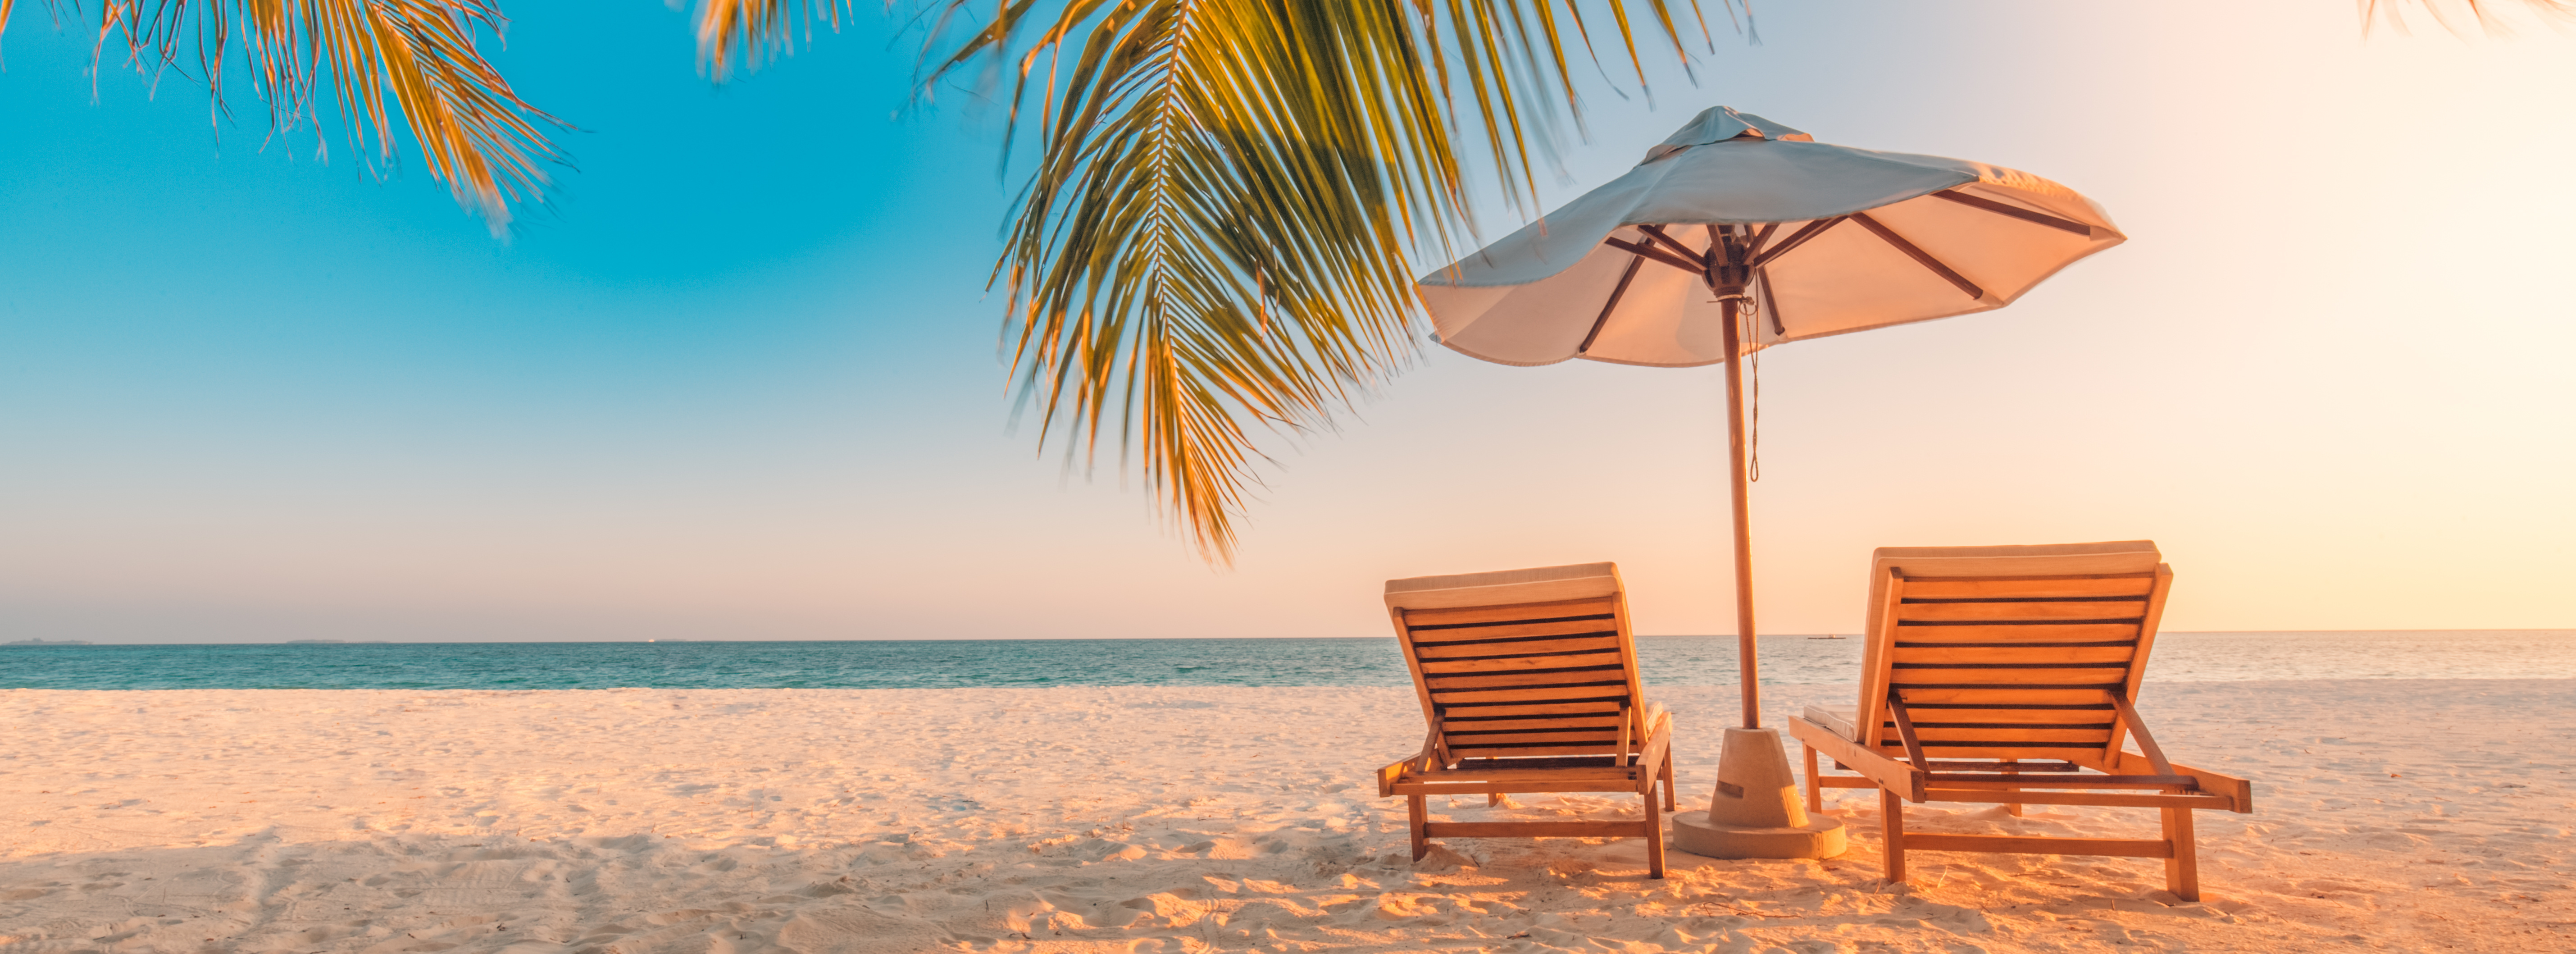 Corona Reise Check und zwei Liegen mit Sonnenschirm am Strand